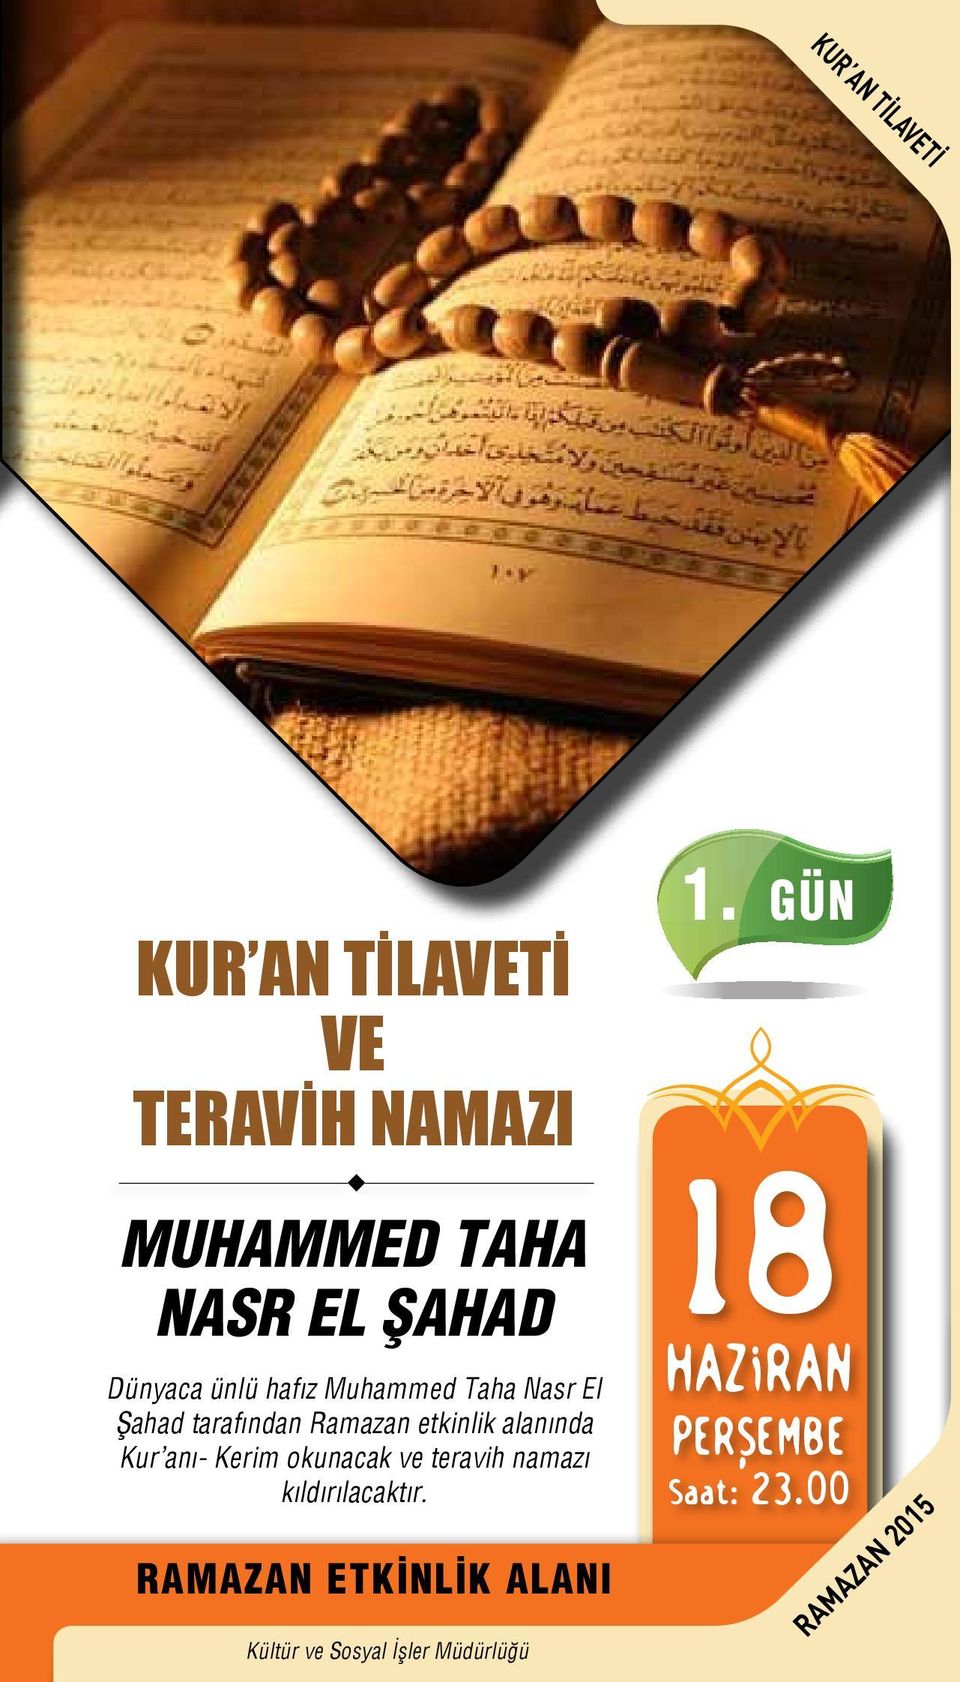 tarafından Ramazan etkinlik alanında Kur anı- Kerim okunacak ve